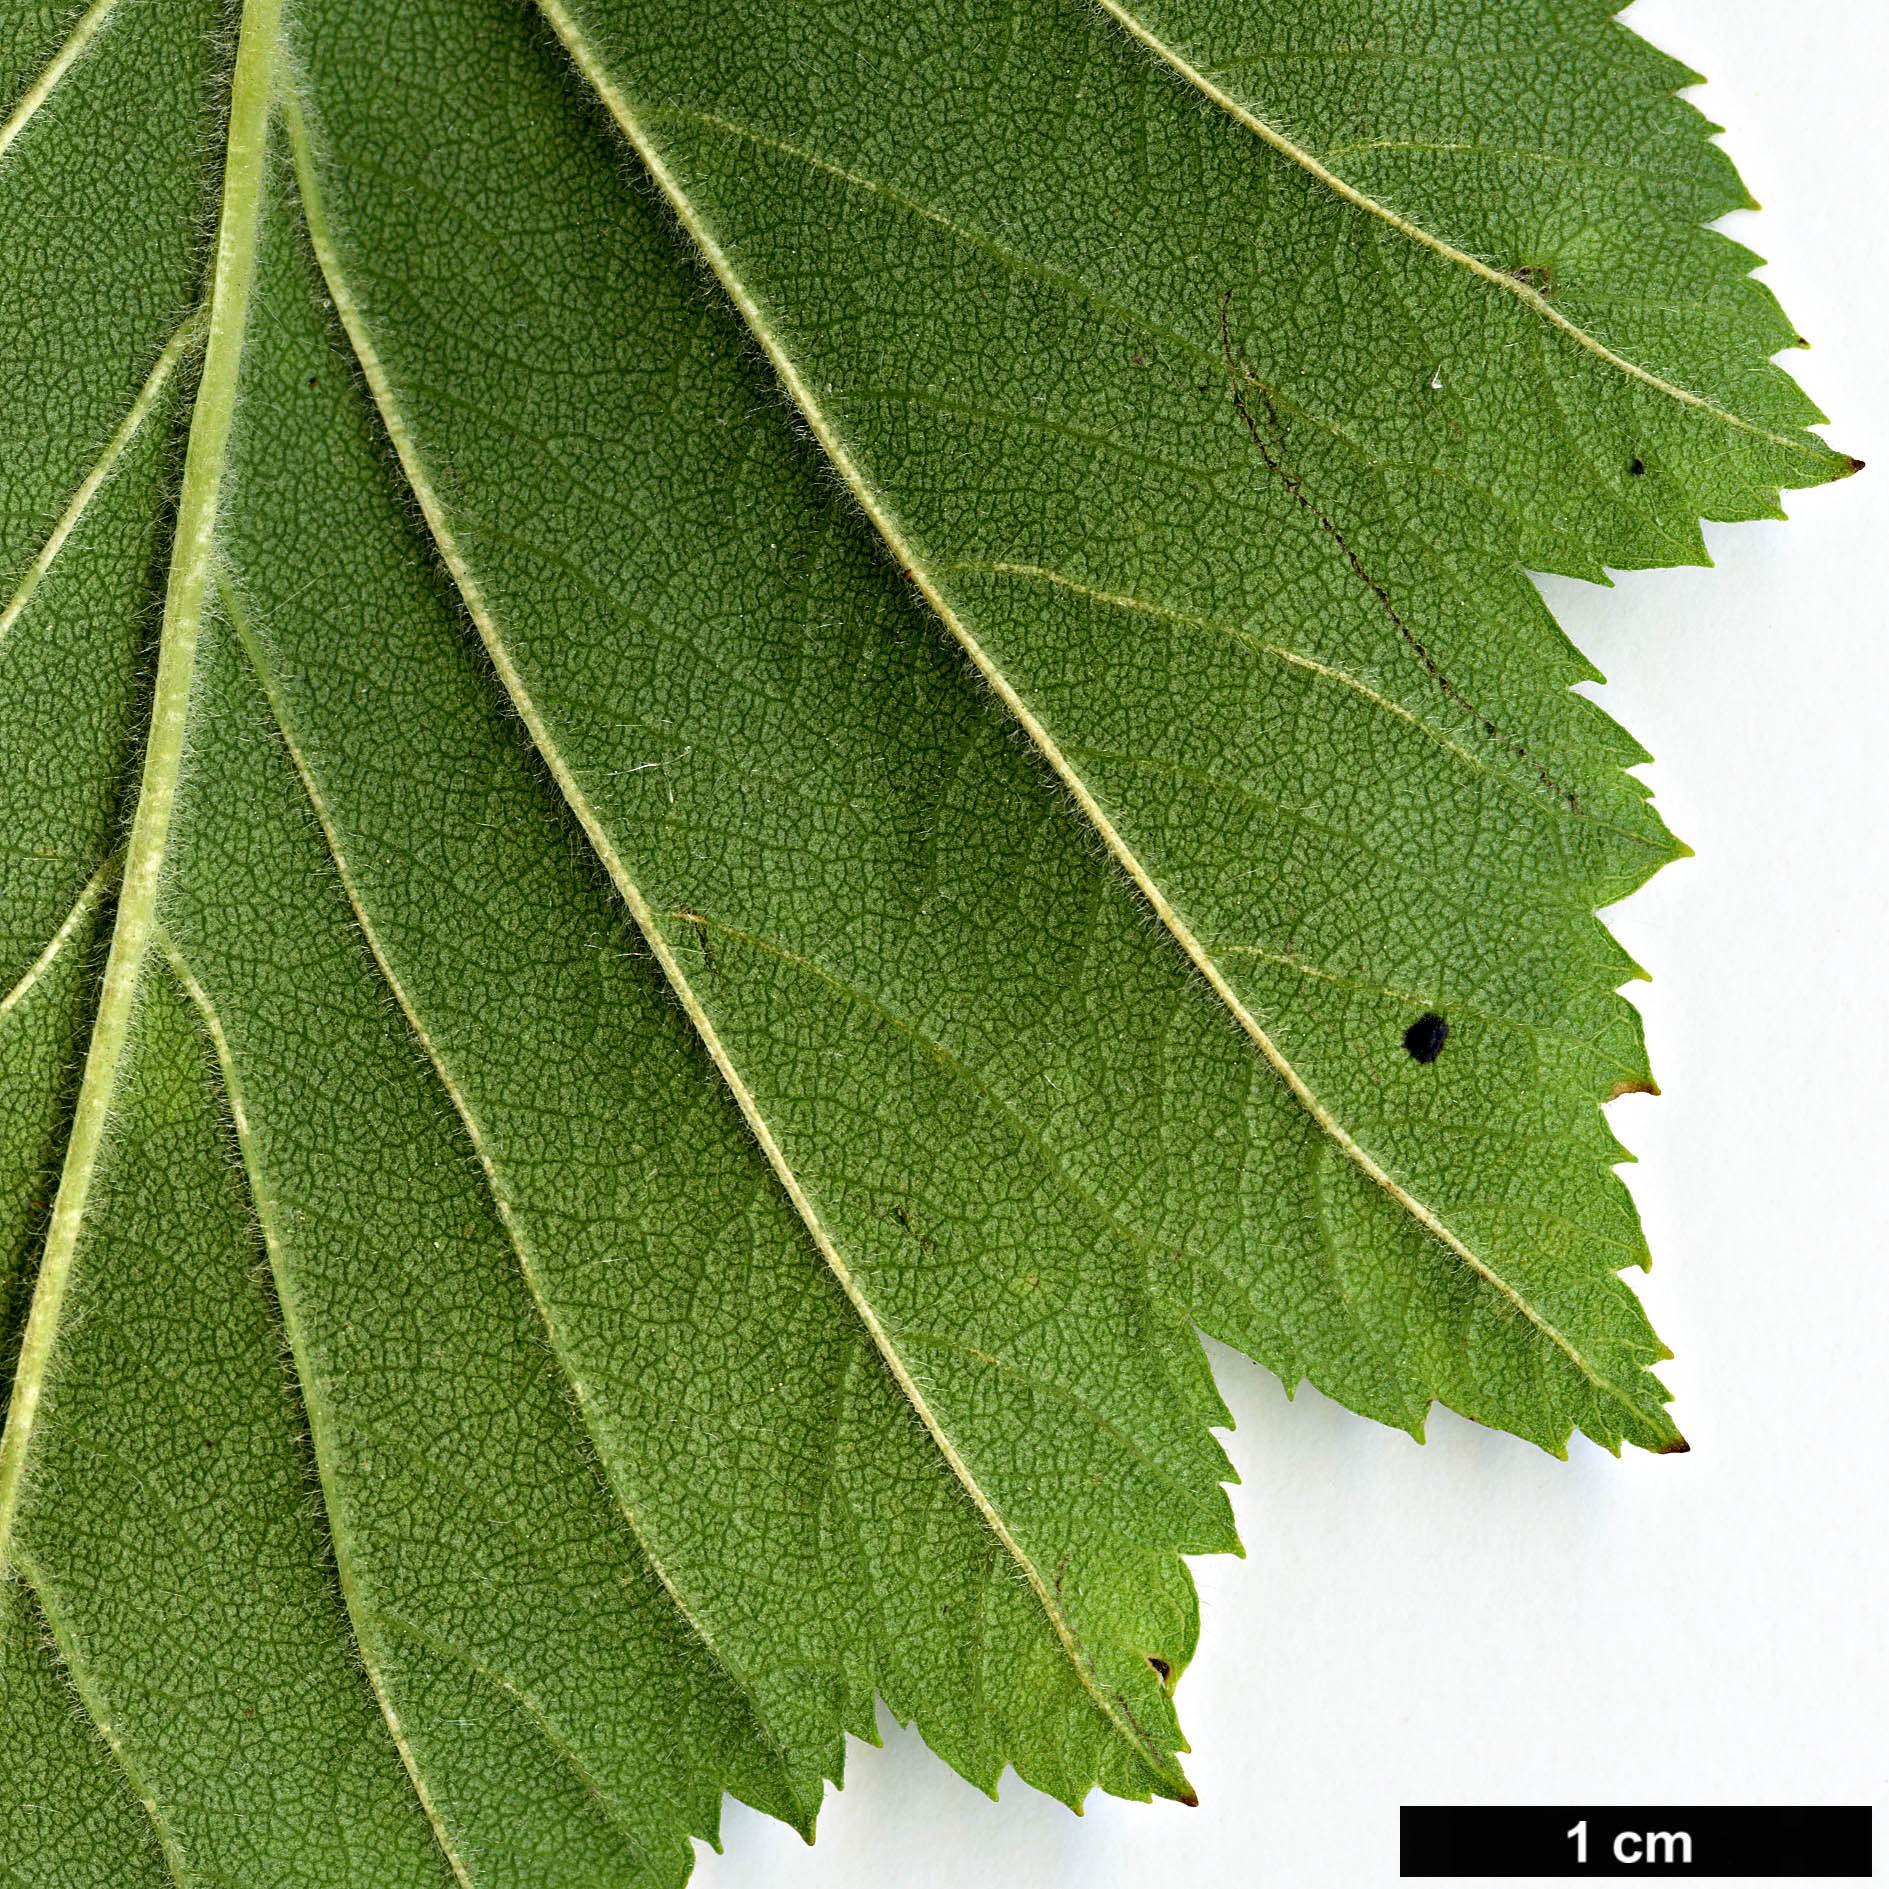 High resolution image: Family: Rosaceae - Genus: Crataegus - Taxon: coccinea - SpeciesSub: var. fulleriana